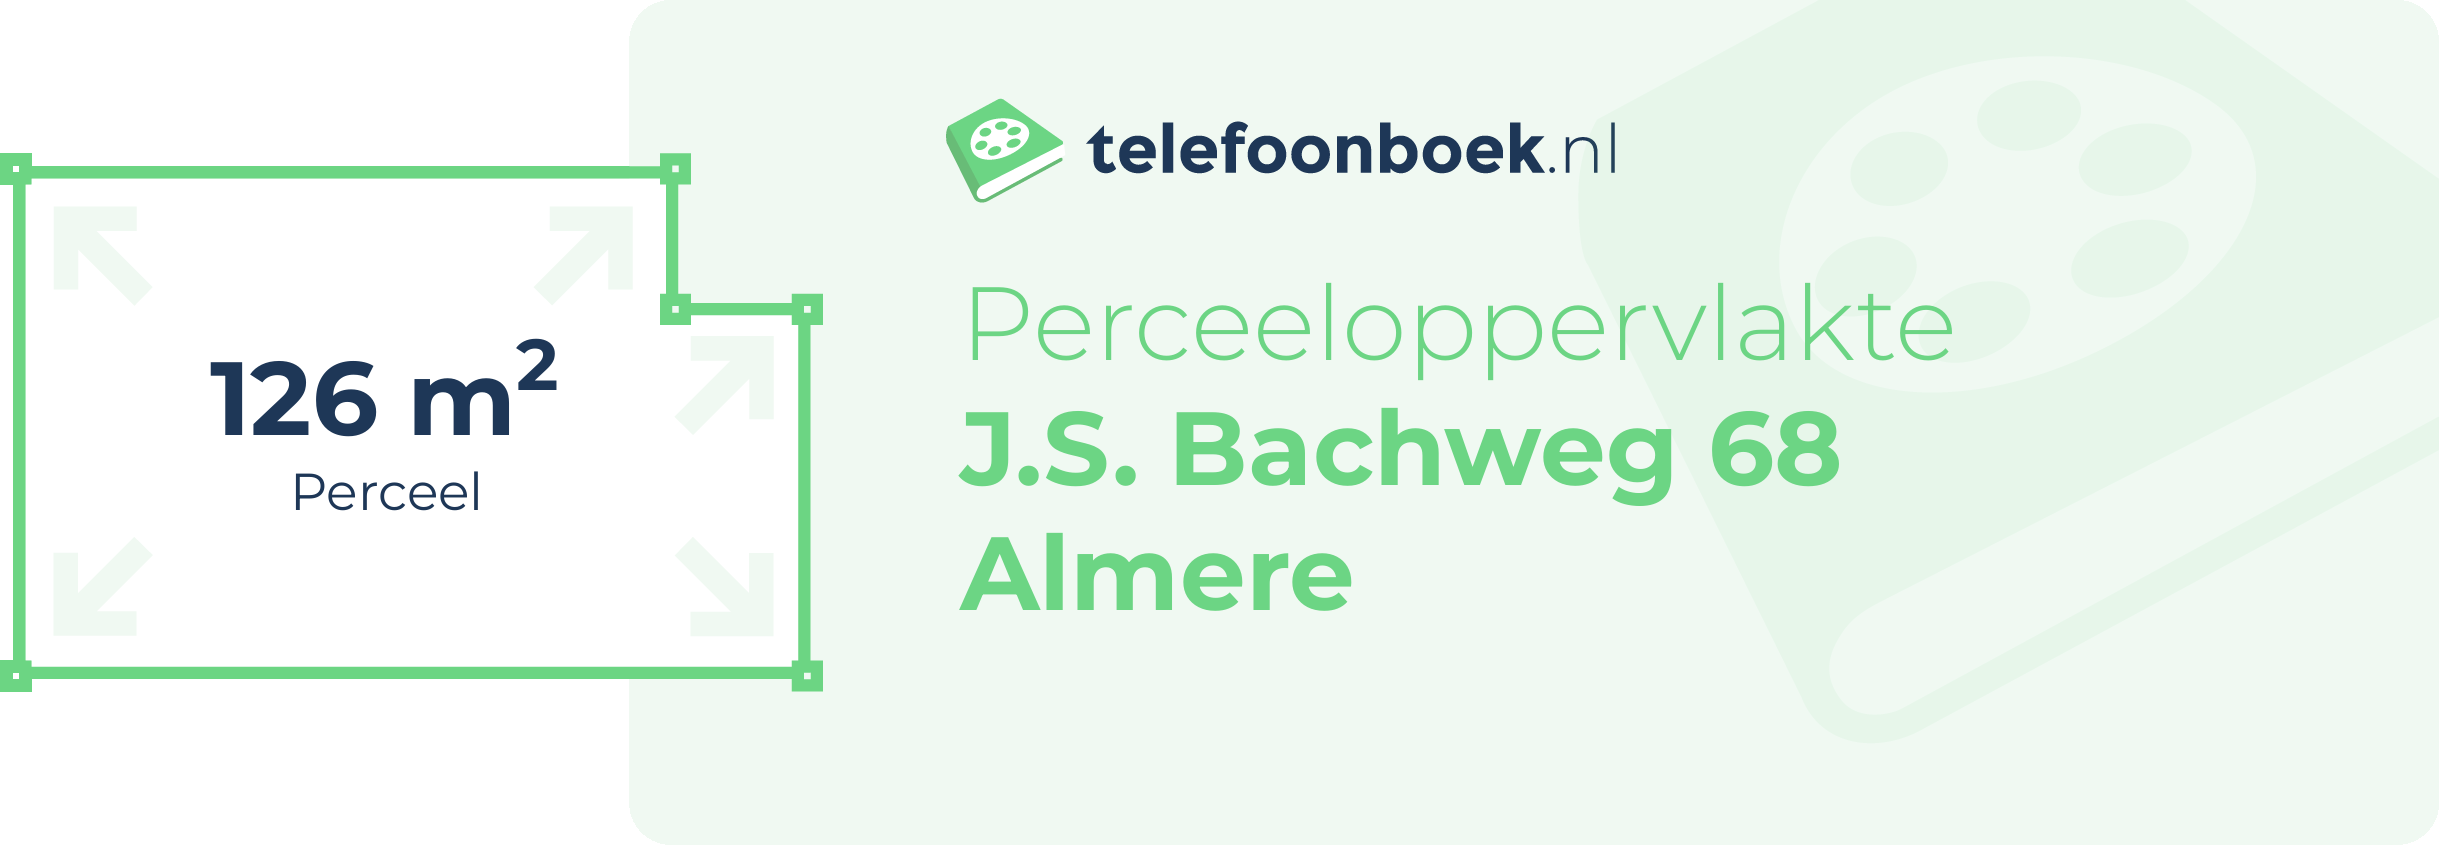 Perceeloppervlakte J.S. Bachweg 68 Almere